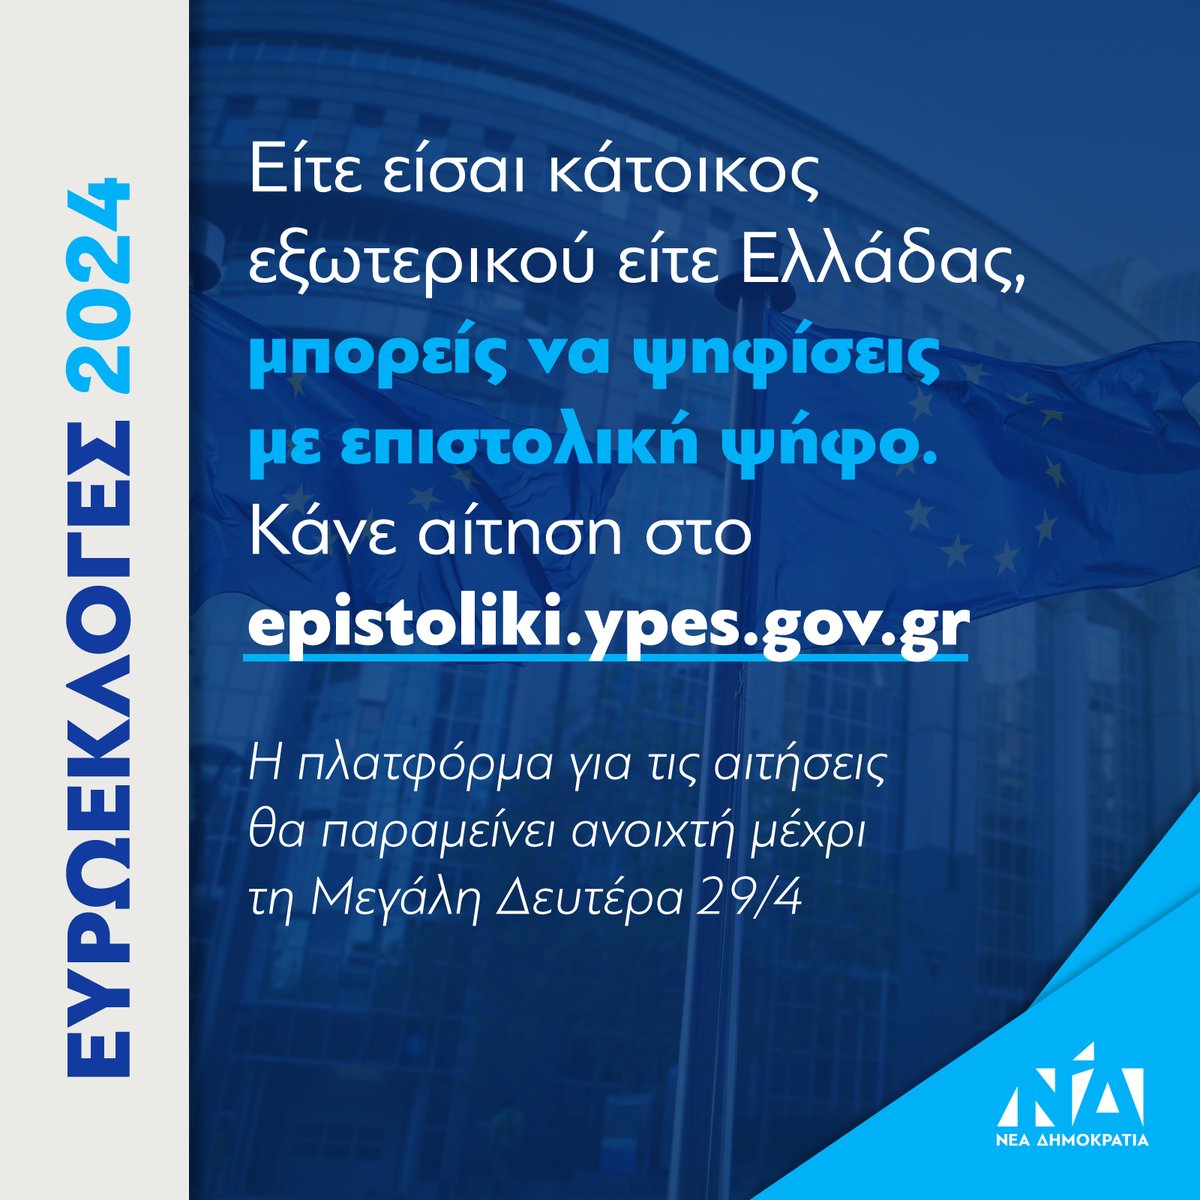 Στις Ευρωεκλογές του Ιουνίου δίνεται, για πρώτη φορά στην Ελλάδα, η δυνατότητα να ψηφίσεις με επιστολική ψήφο. Η πλατφόρμα θα παραμείνει ανοιχτή μέχρι τη Μεγάλη Δευτέρα 29/4. Είτε είσαι κάτοικος εξωτερικού είτε Ελλάδας, μπορείς να κάνεις αίτηση στο epistoliki.ypes.gov.gr.